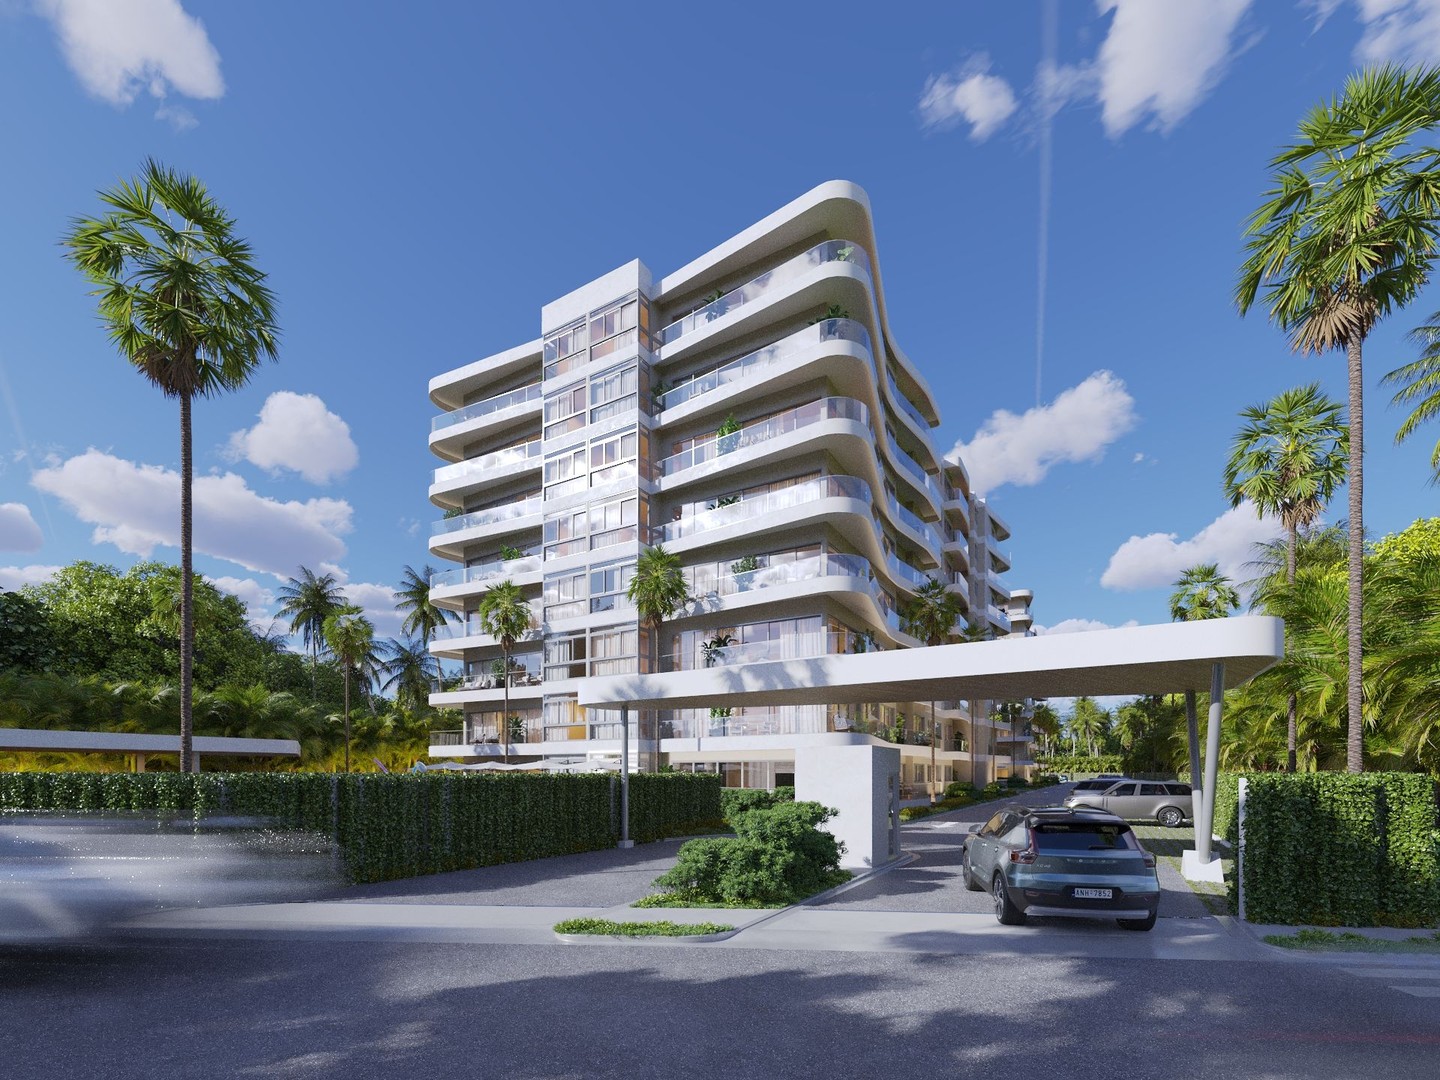 apartamentos - Proyecto de apartamentos en venta en el malecón de puerto plata frente al mar
 6